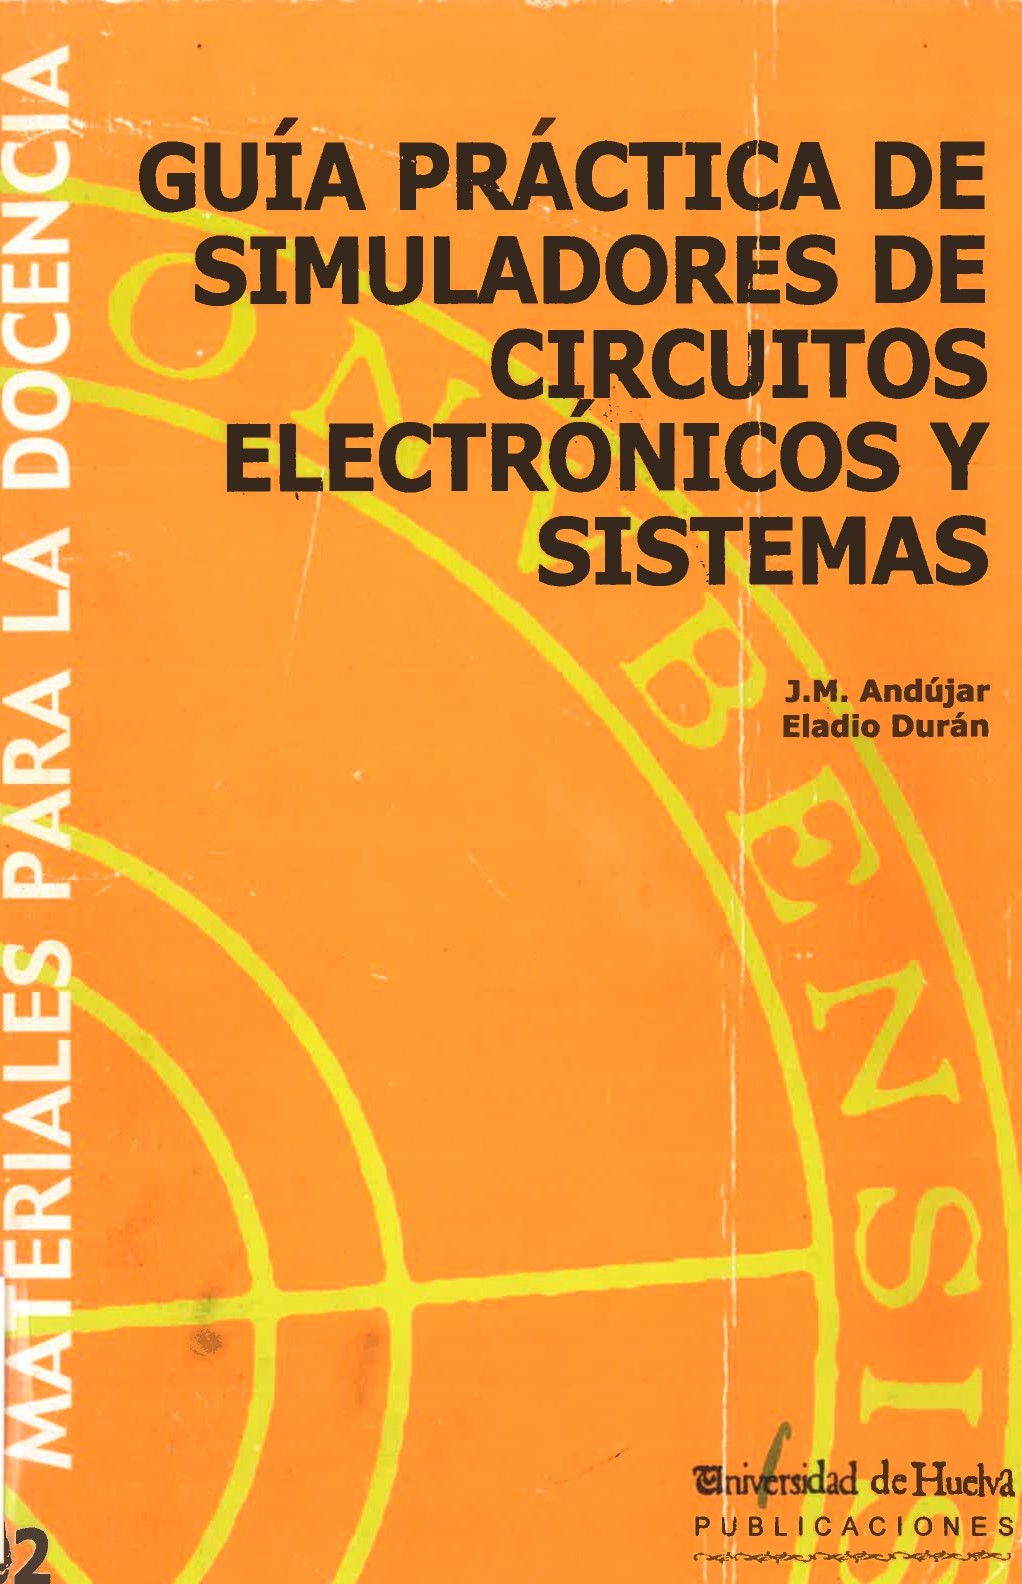 Imagen de portada del libro Guía práctica de simuladores de circuitos electrónicos y sistemas I